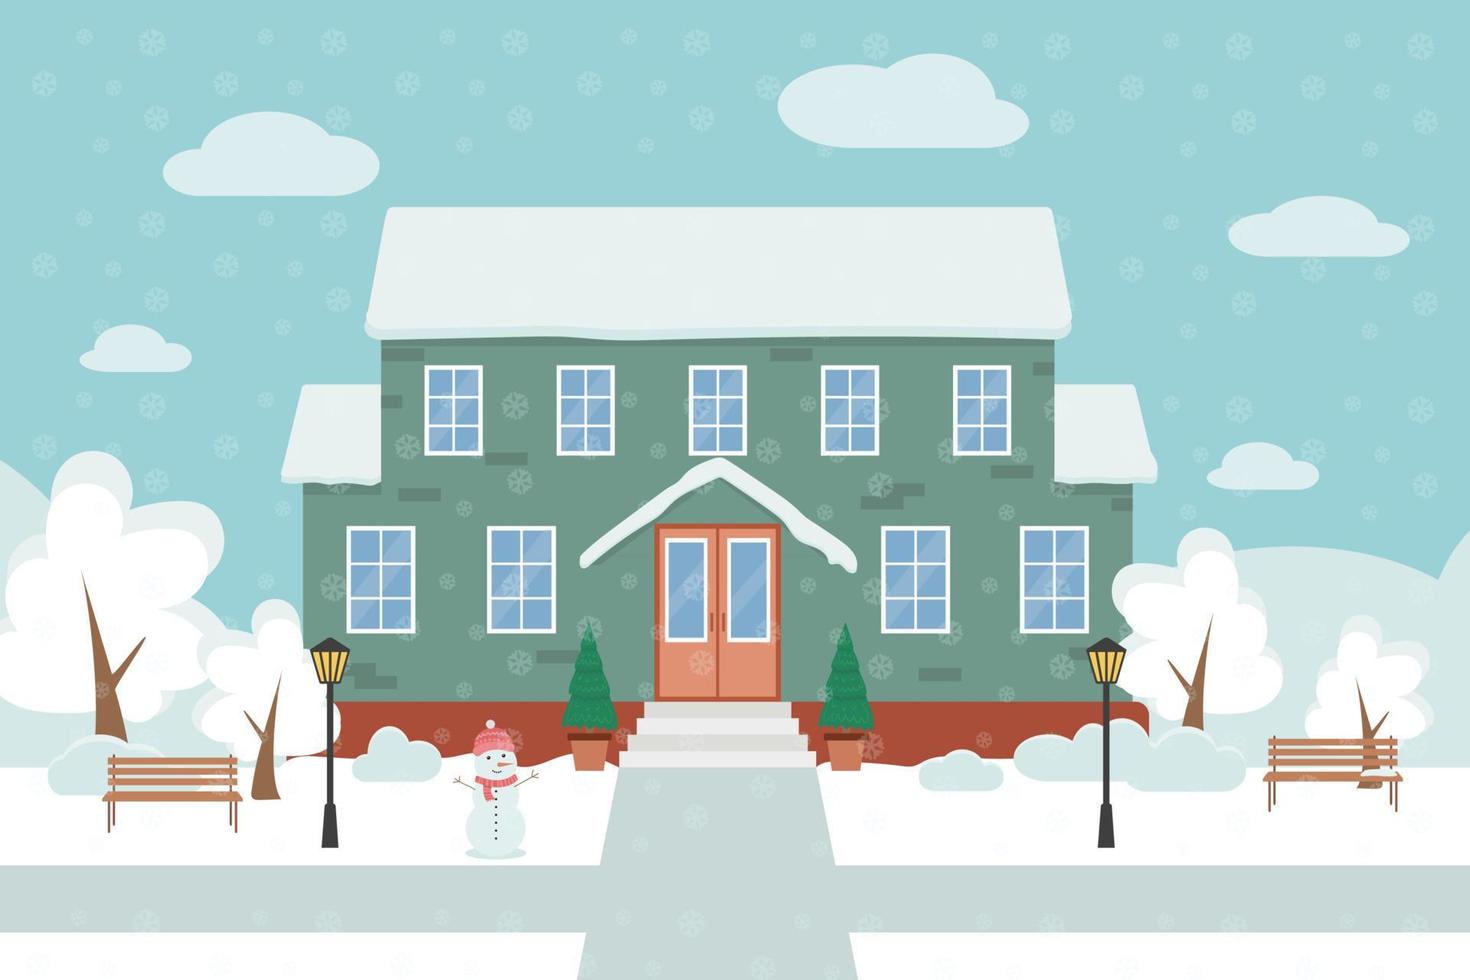 illustrazione vettoriale piatta invernale di una casa verde, sullo sfondo del paesaggio invernale.